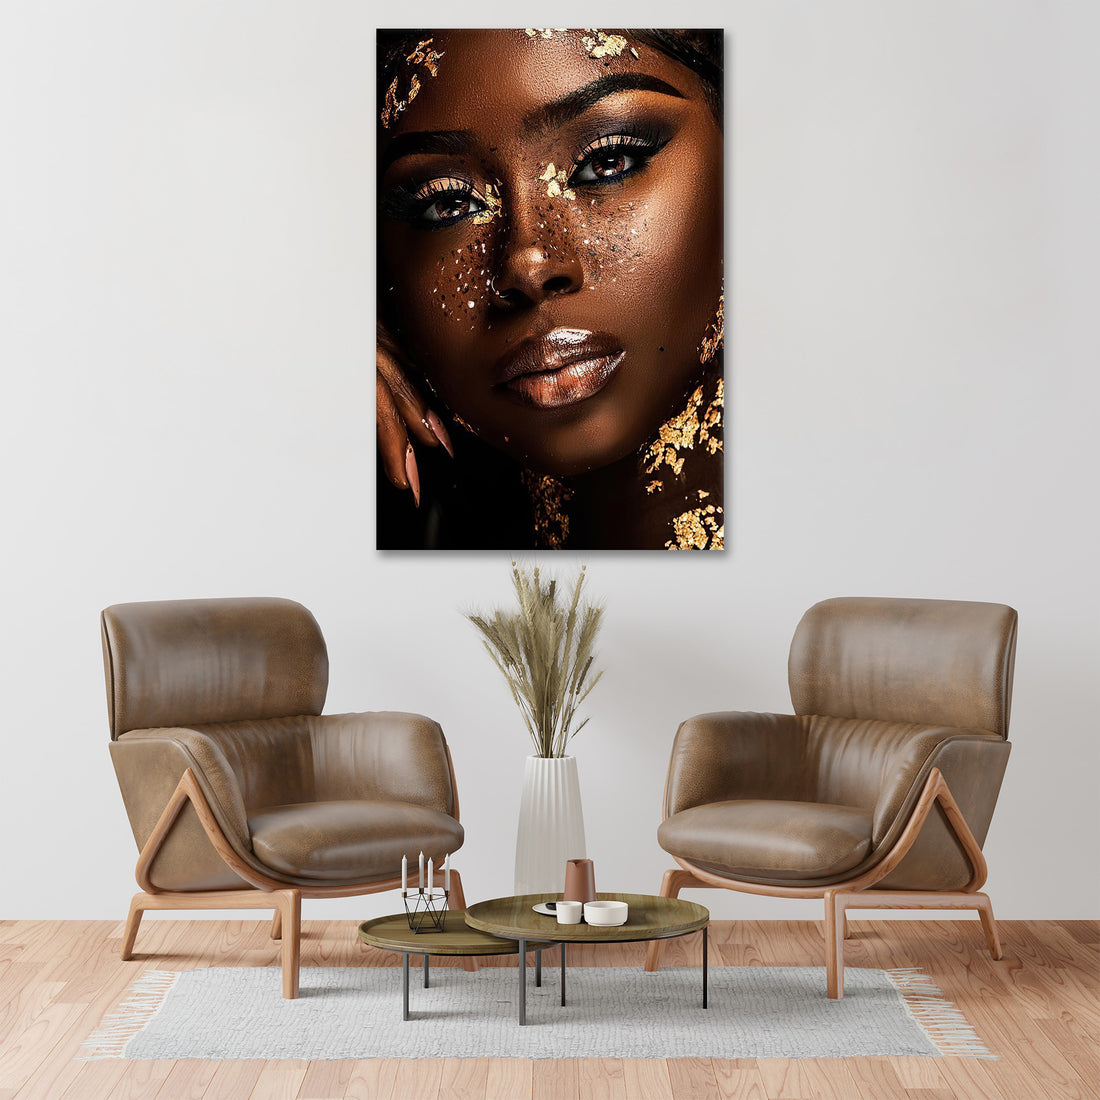 Wandbild abstrakt afrikanische Frau, Perfect Face. Gesicht